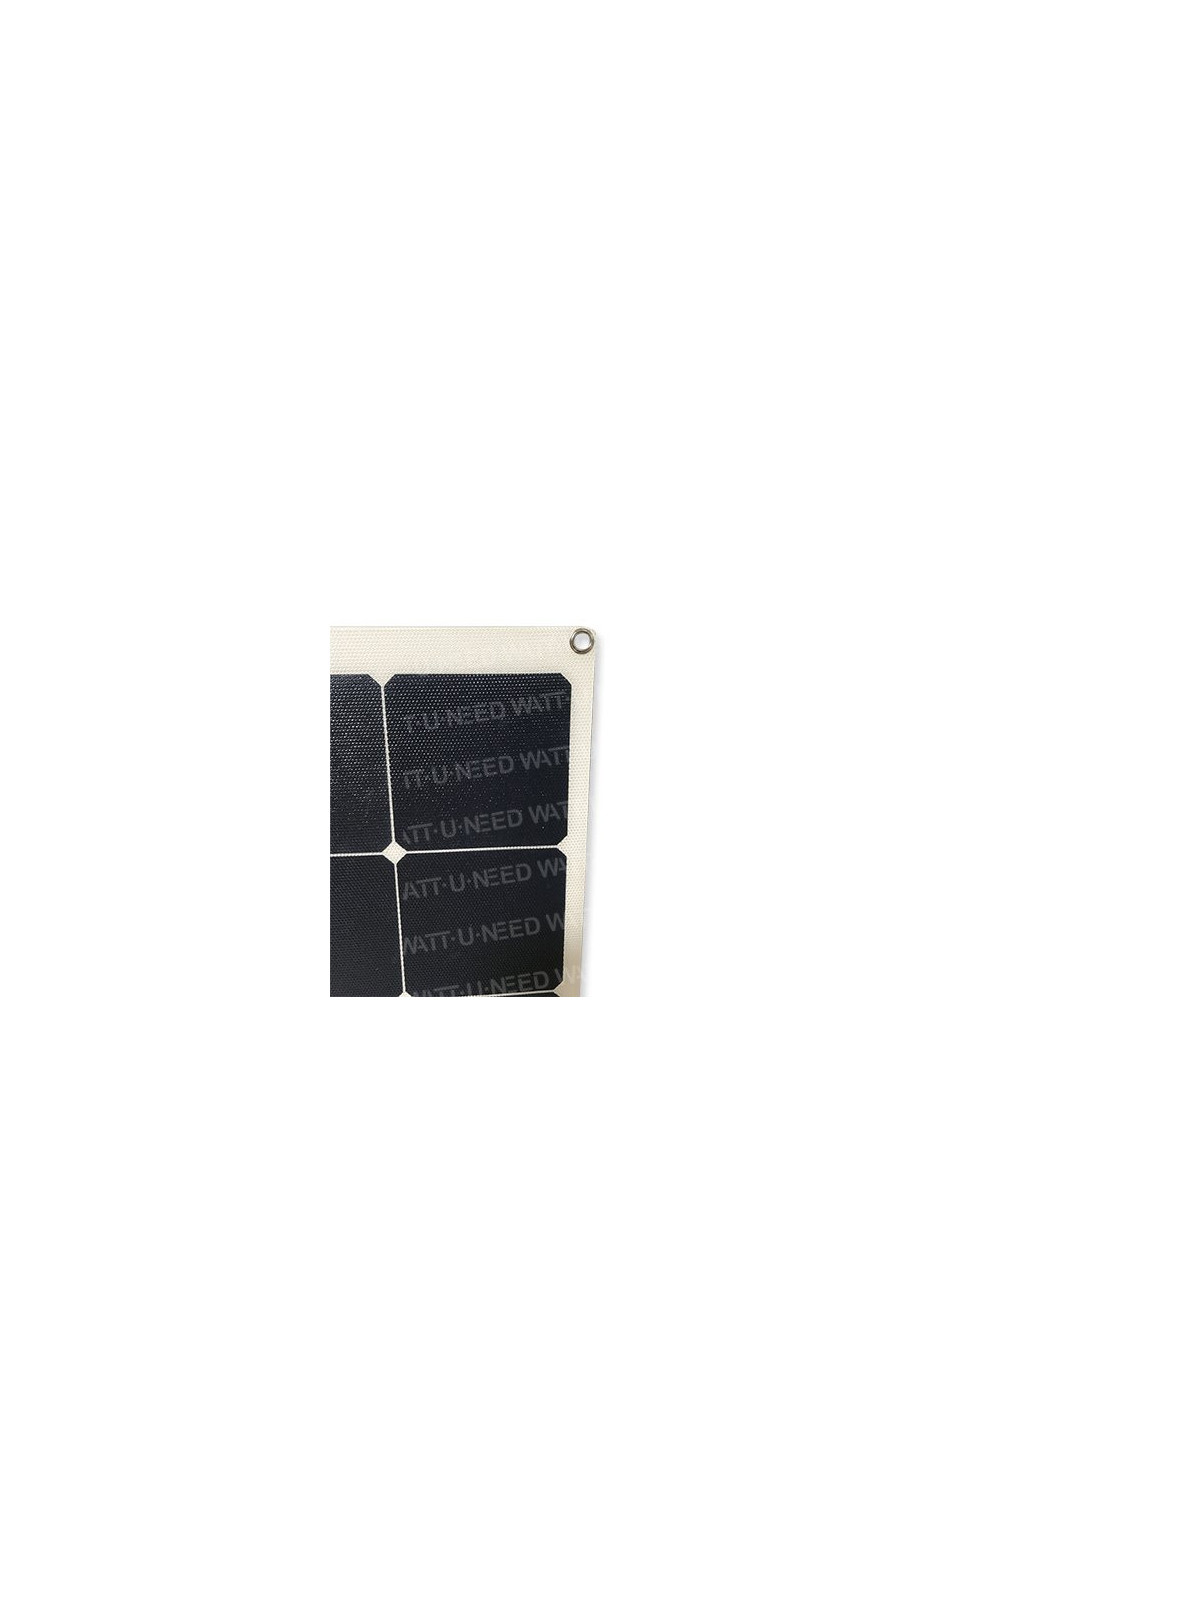 Panel solar MX FLEX 140 Wp